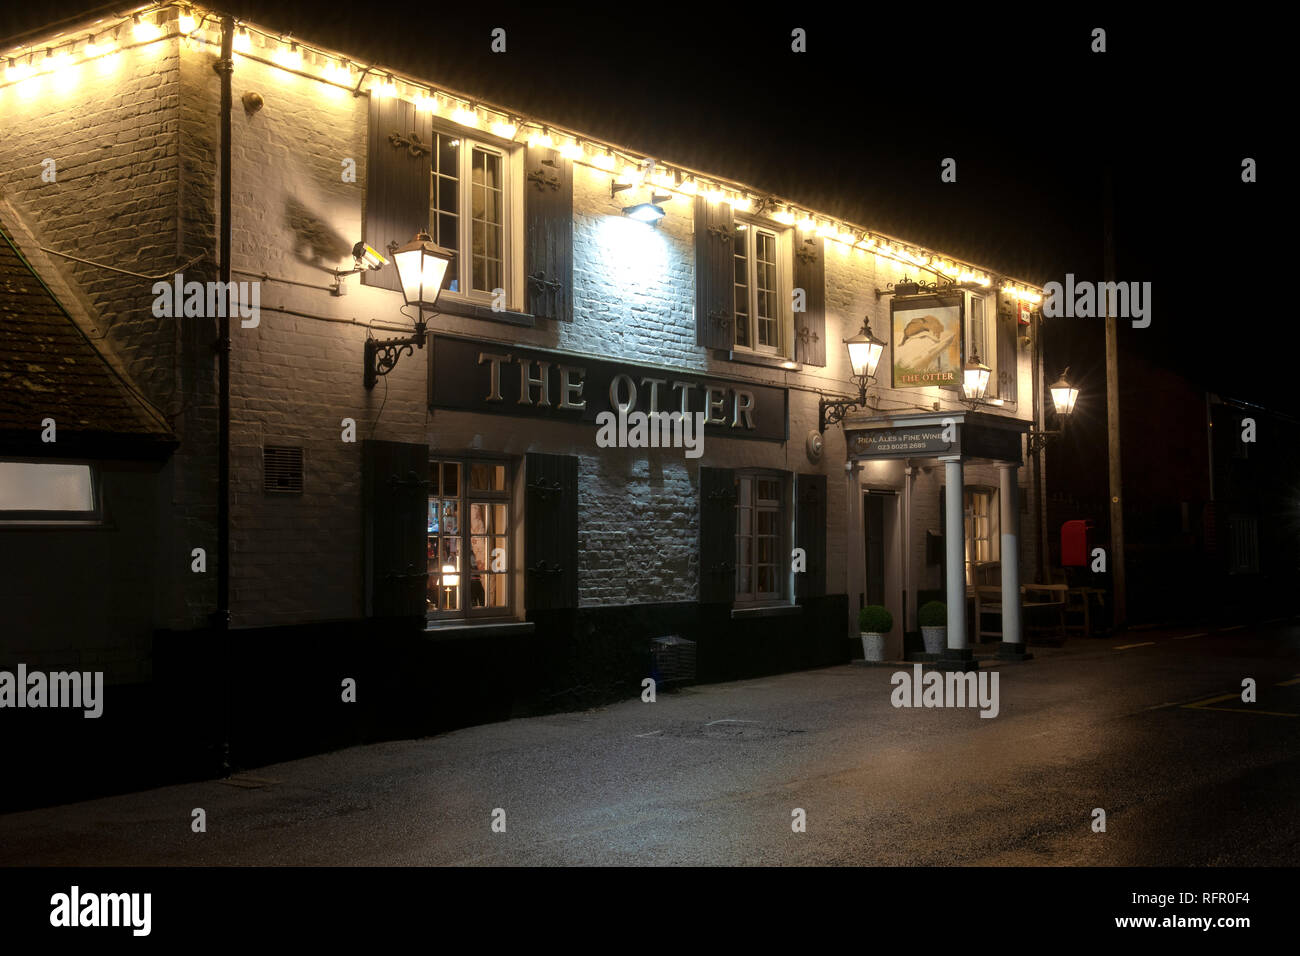 The Otter Pub - Public House - Otterbourne, Hampshire, England, UK Stock Photo